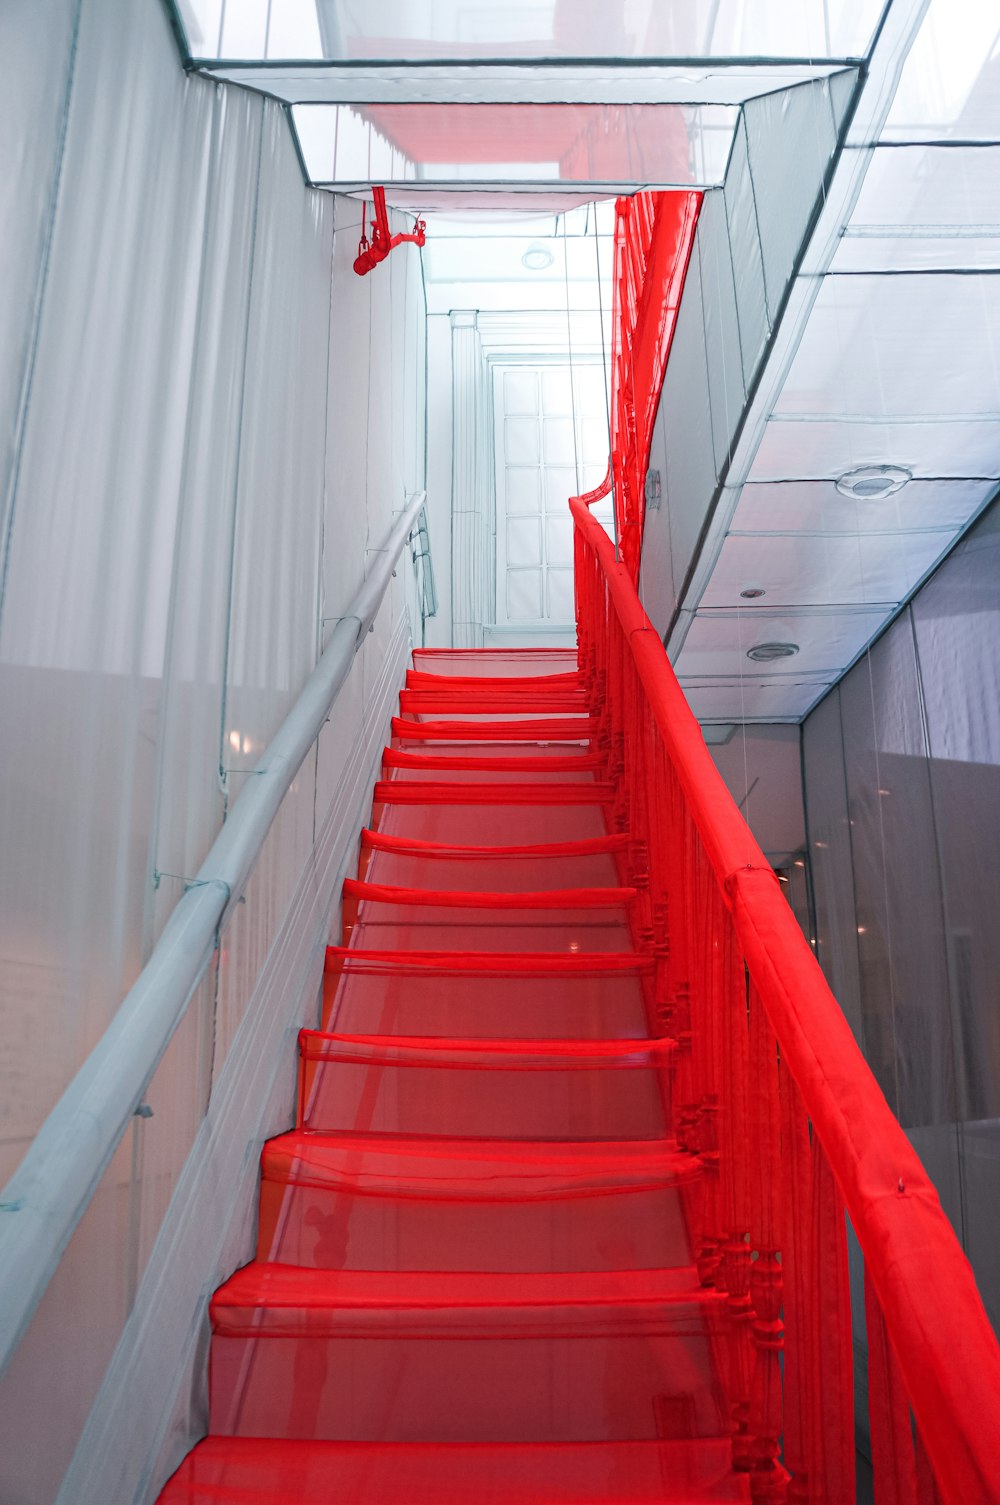 Escalera roja con barandillas blancas